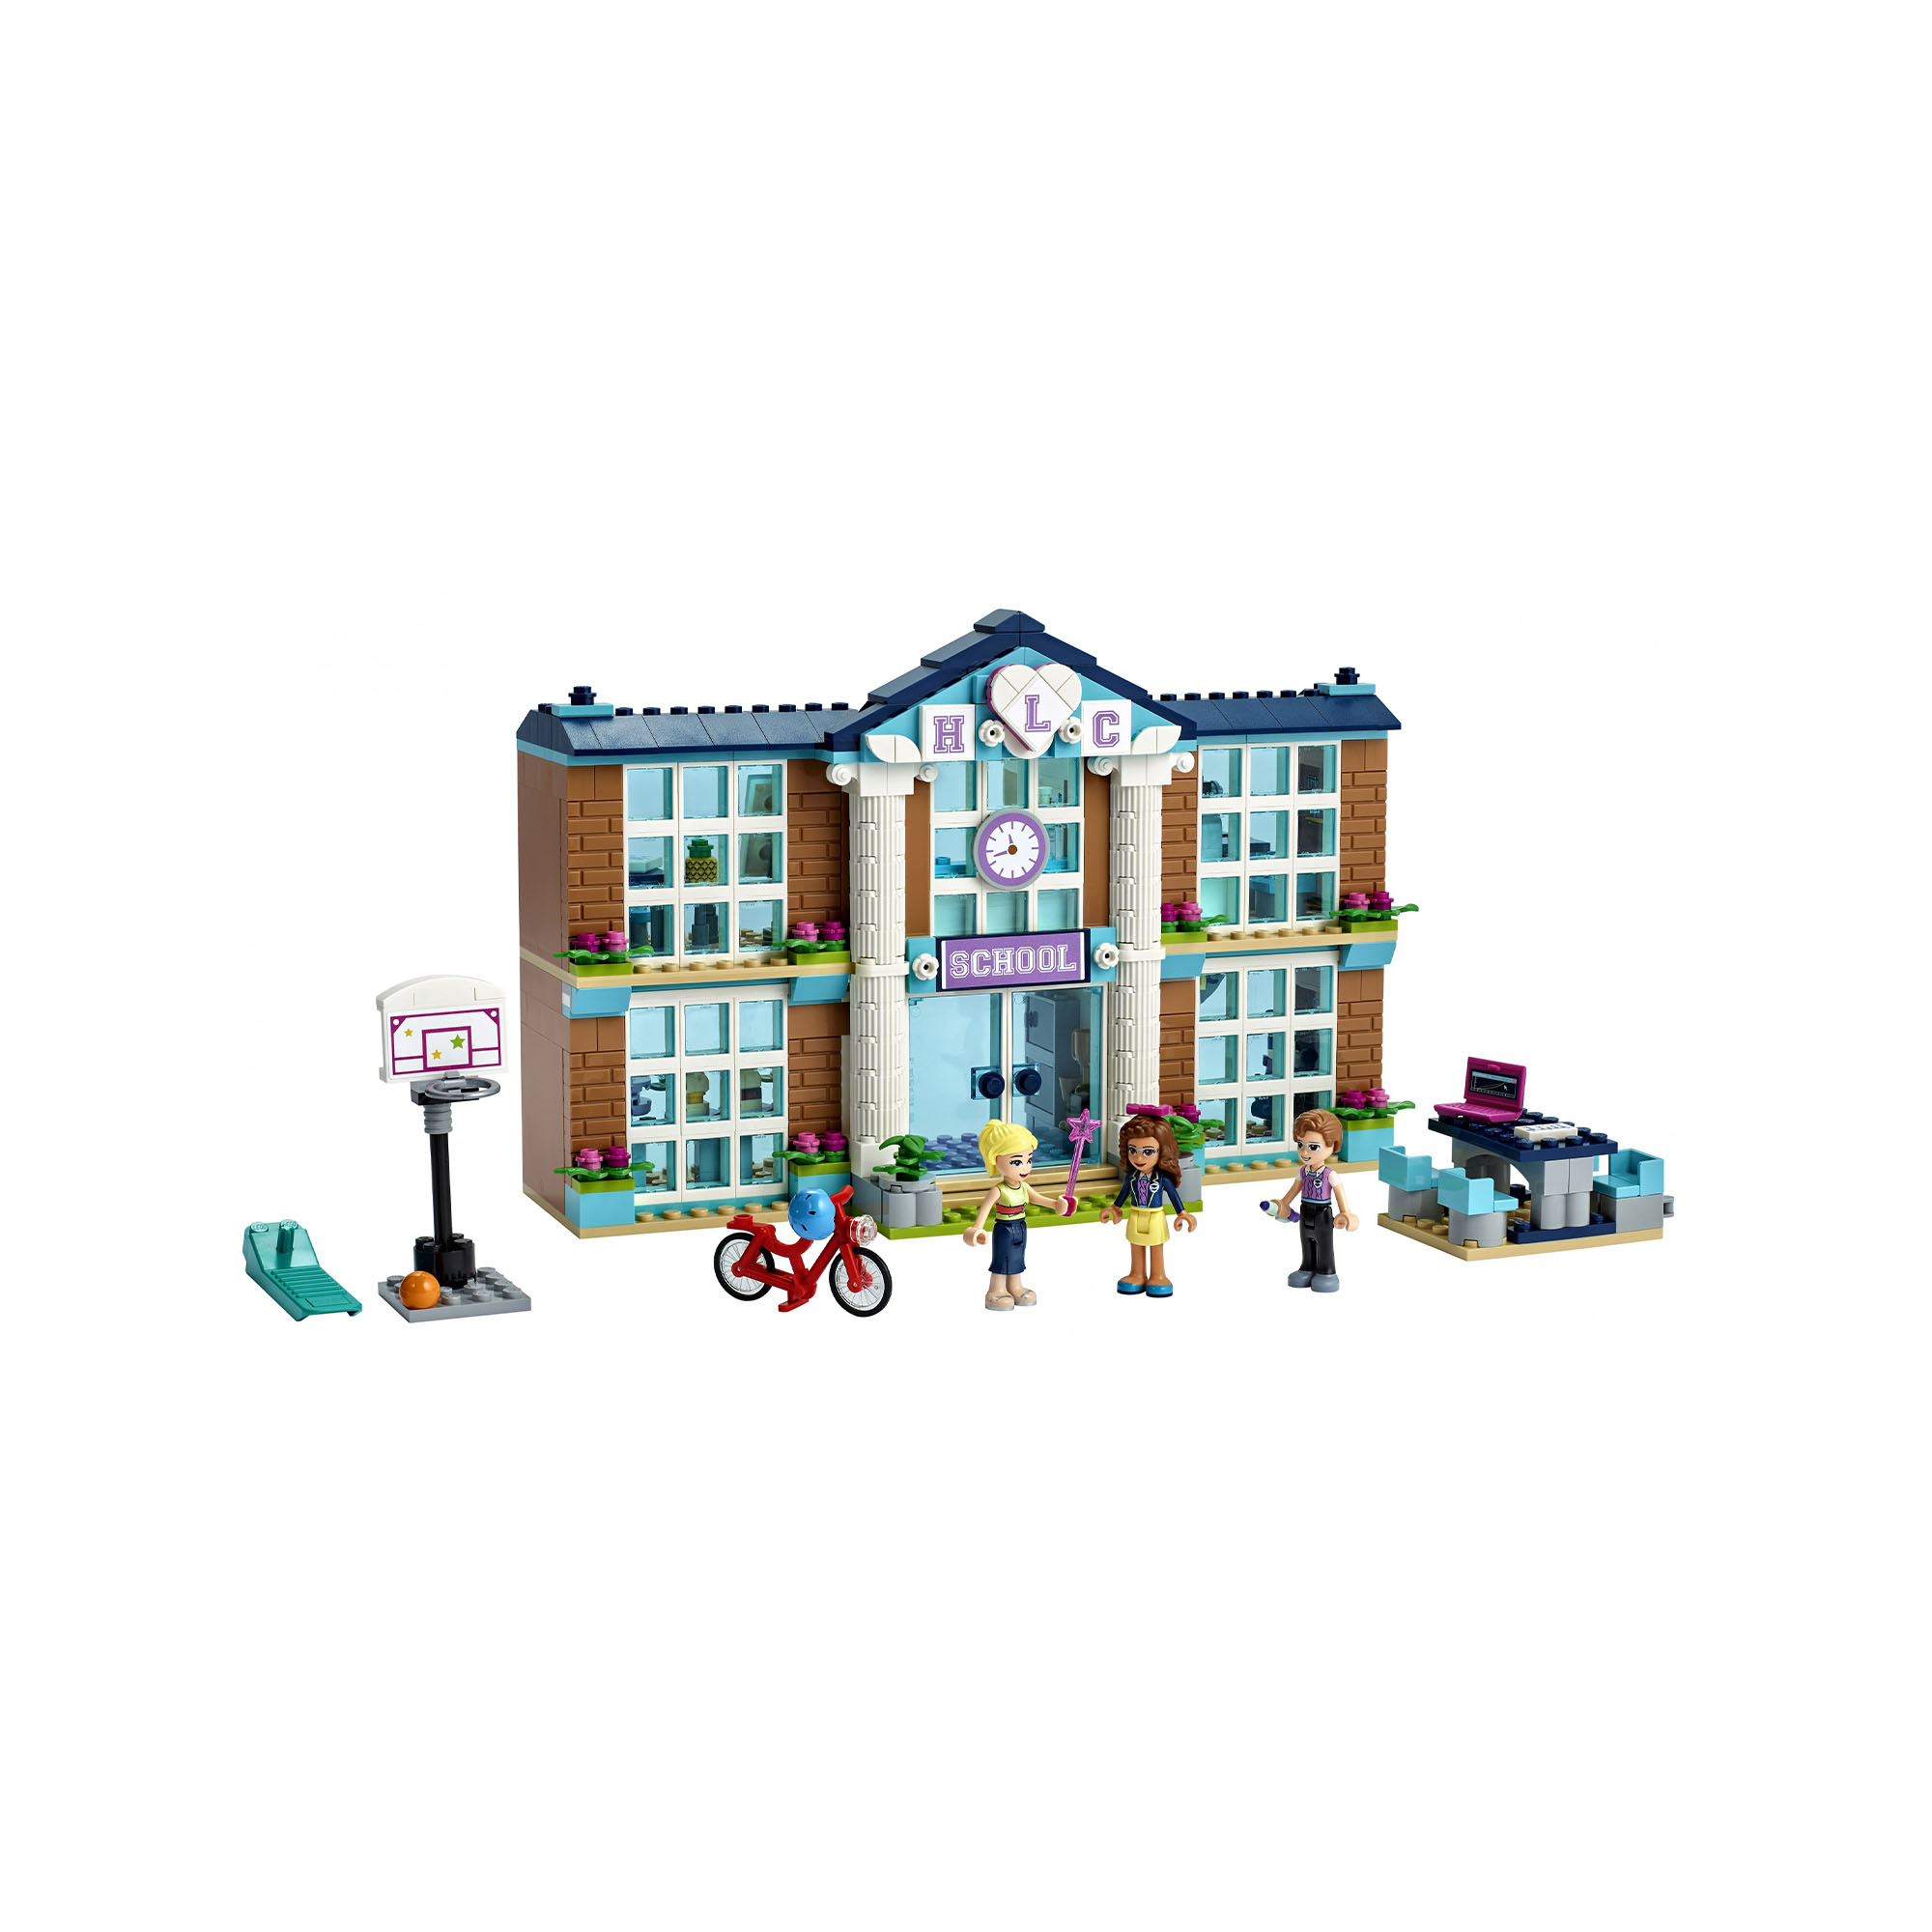 LEGO Friends Scuola di Heartlake City, Set di Costruzioni per Bambini 6 Anni con 41682, , large